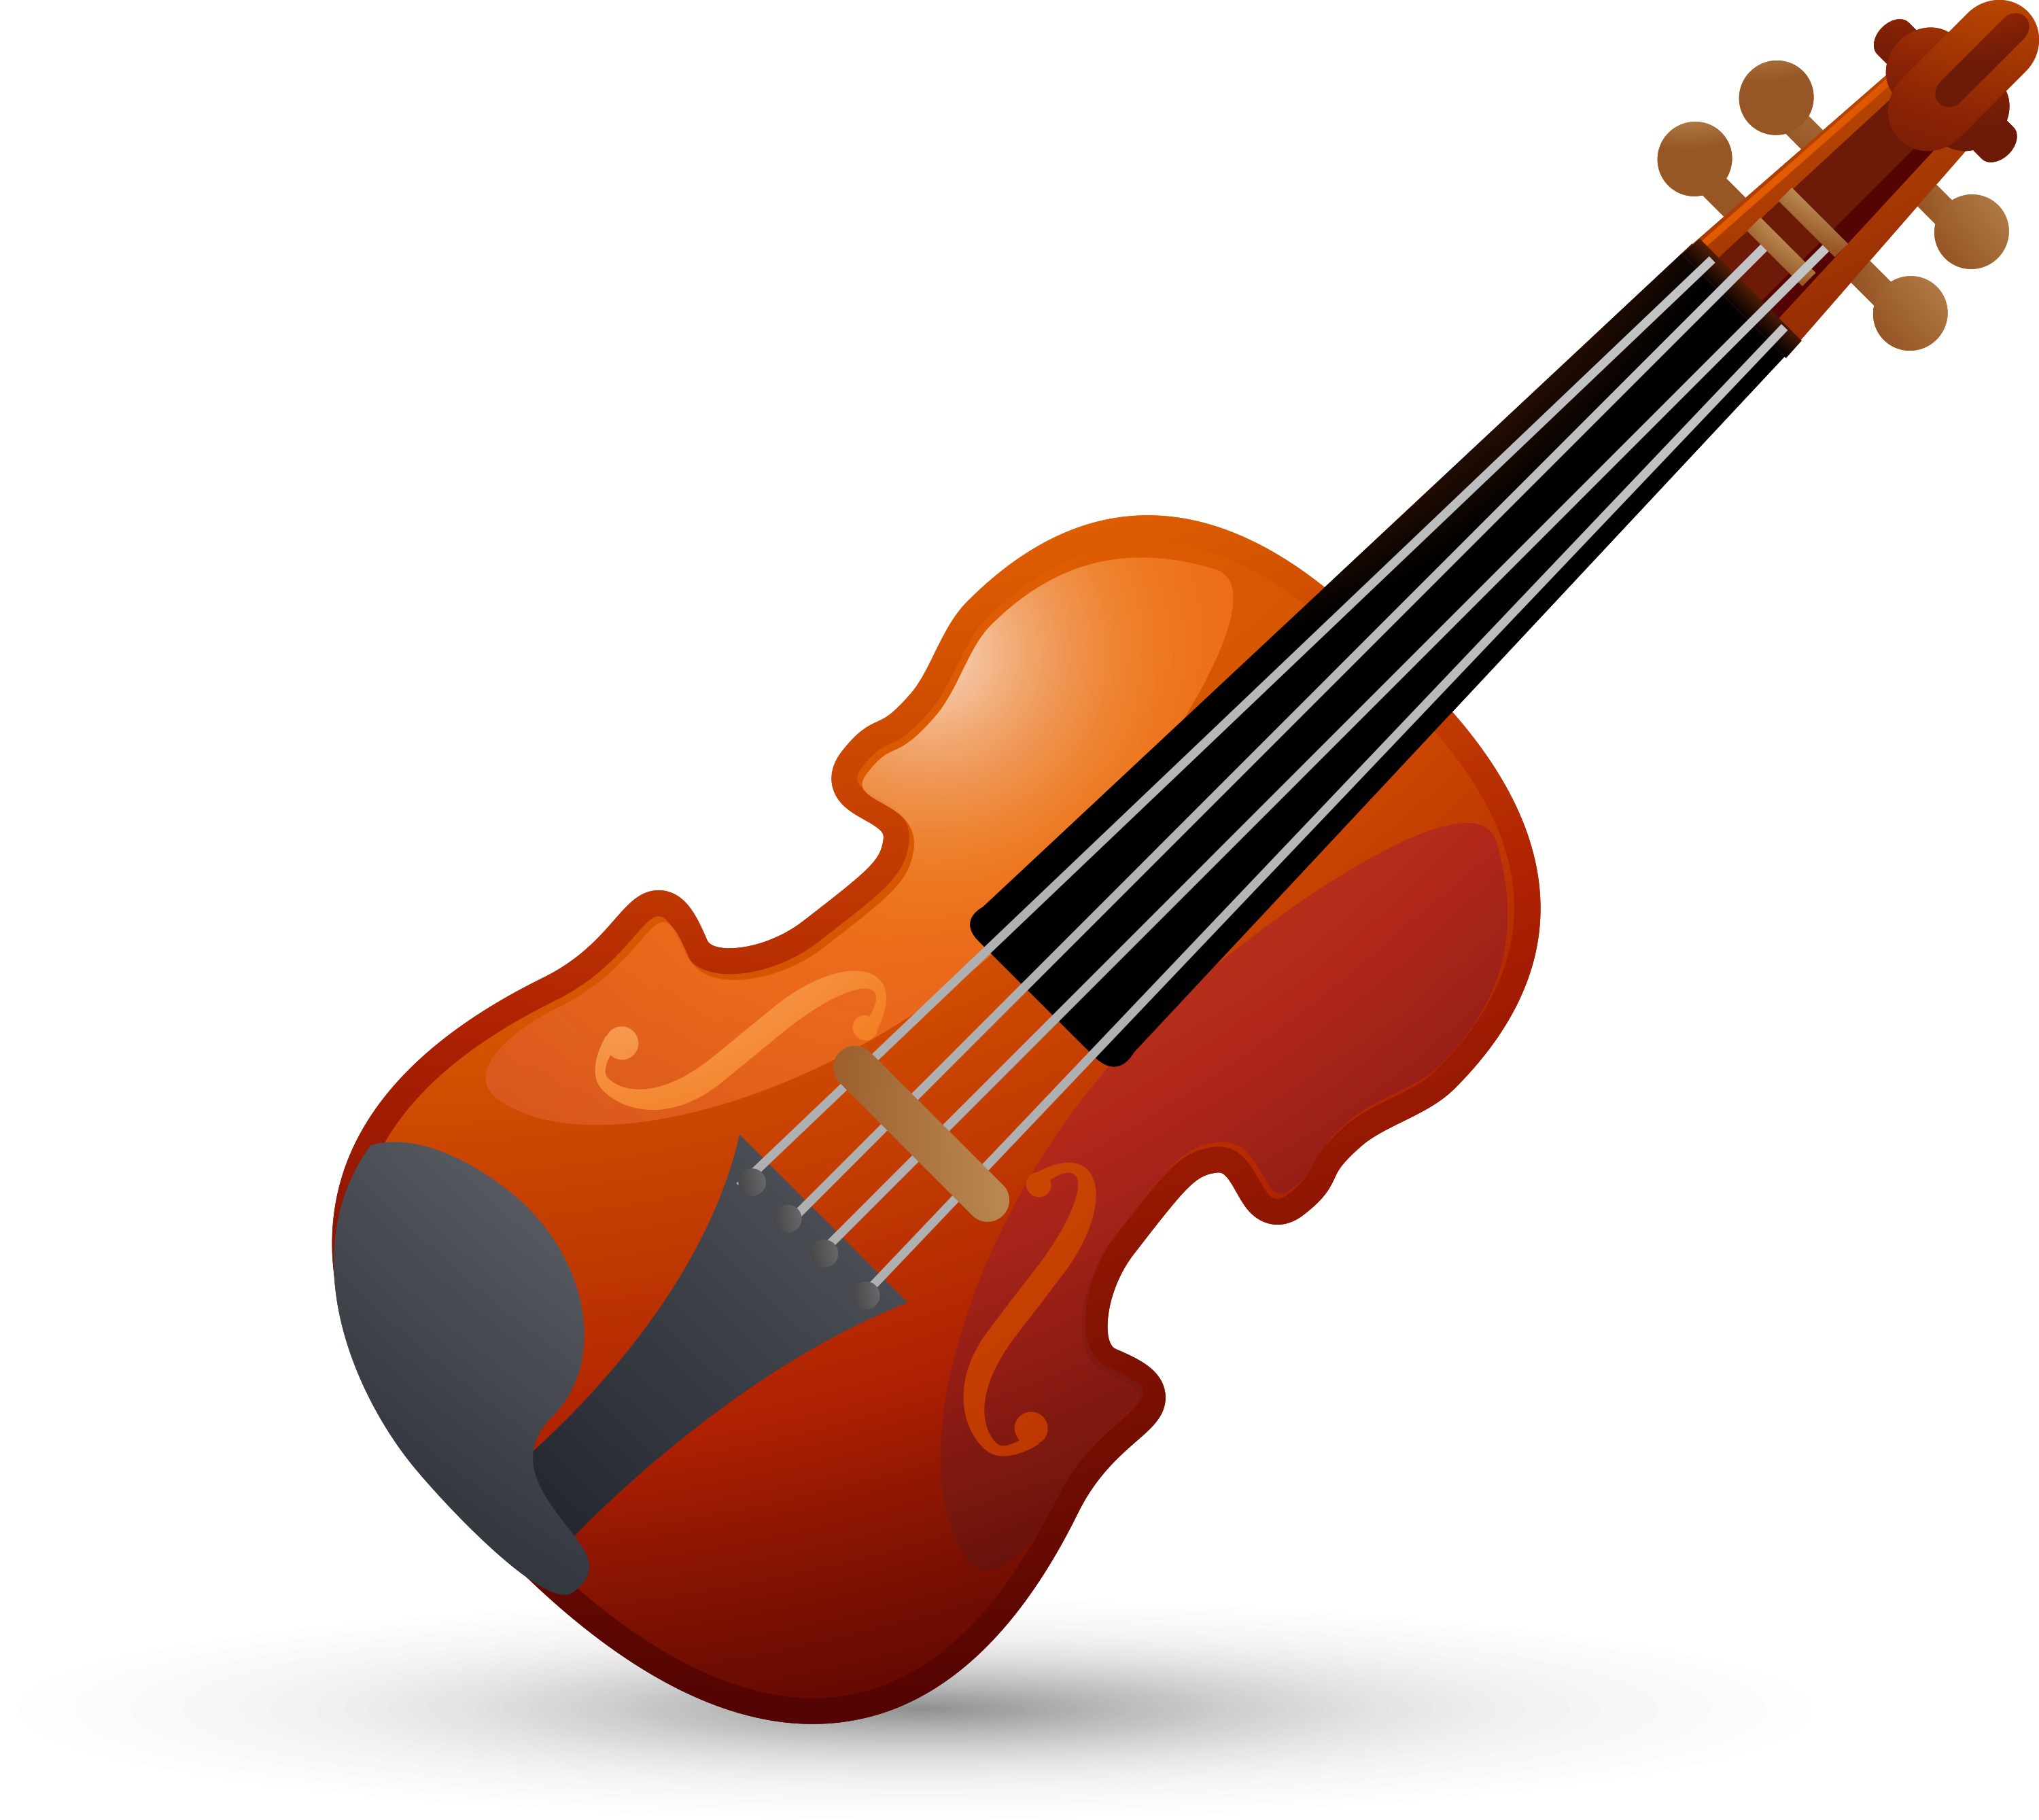 Violin instruments. Скрипка. Наклейка скрипка. Скрипка логотип. Скрипка icon.